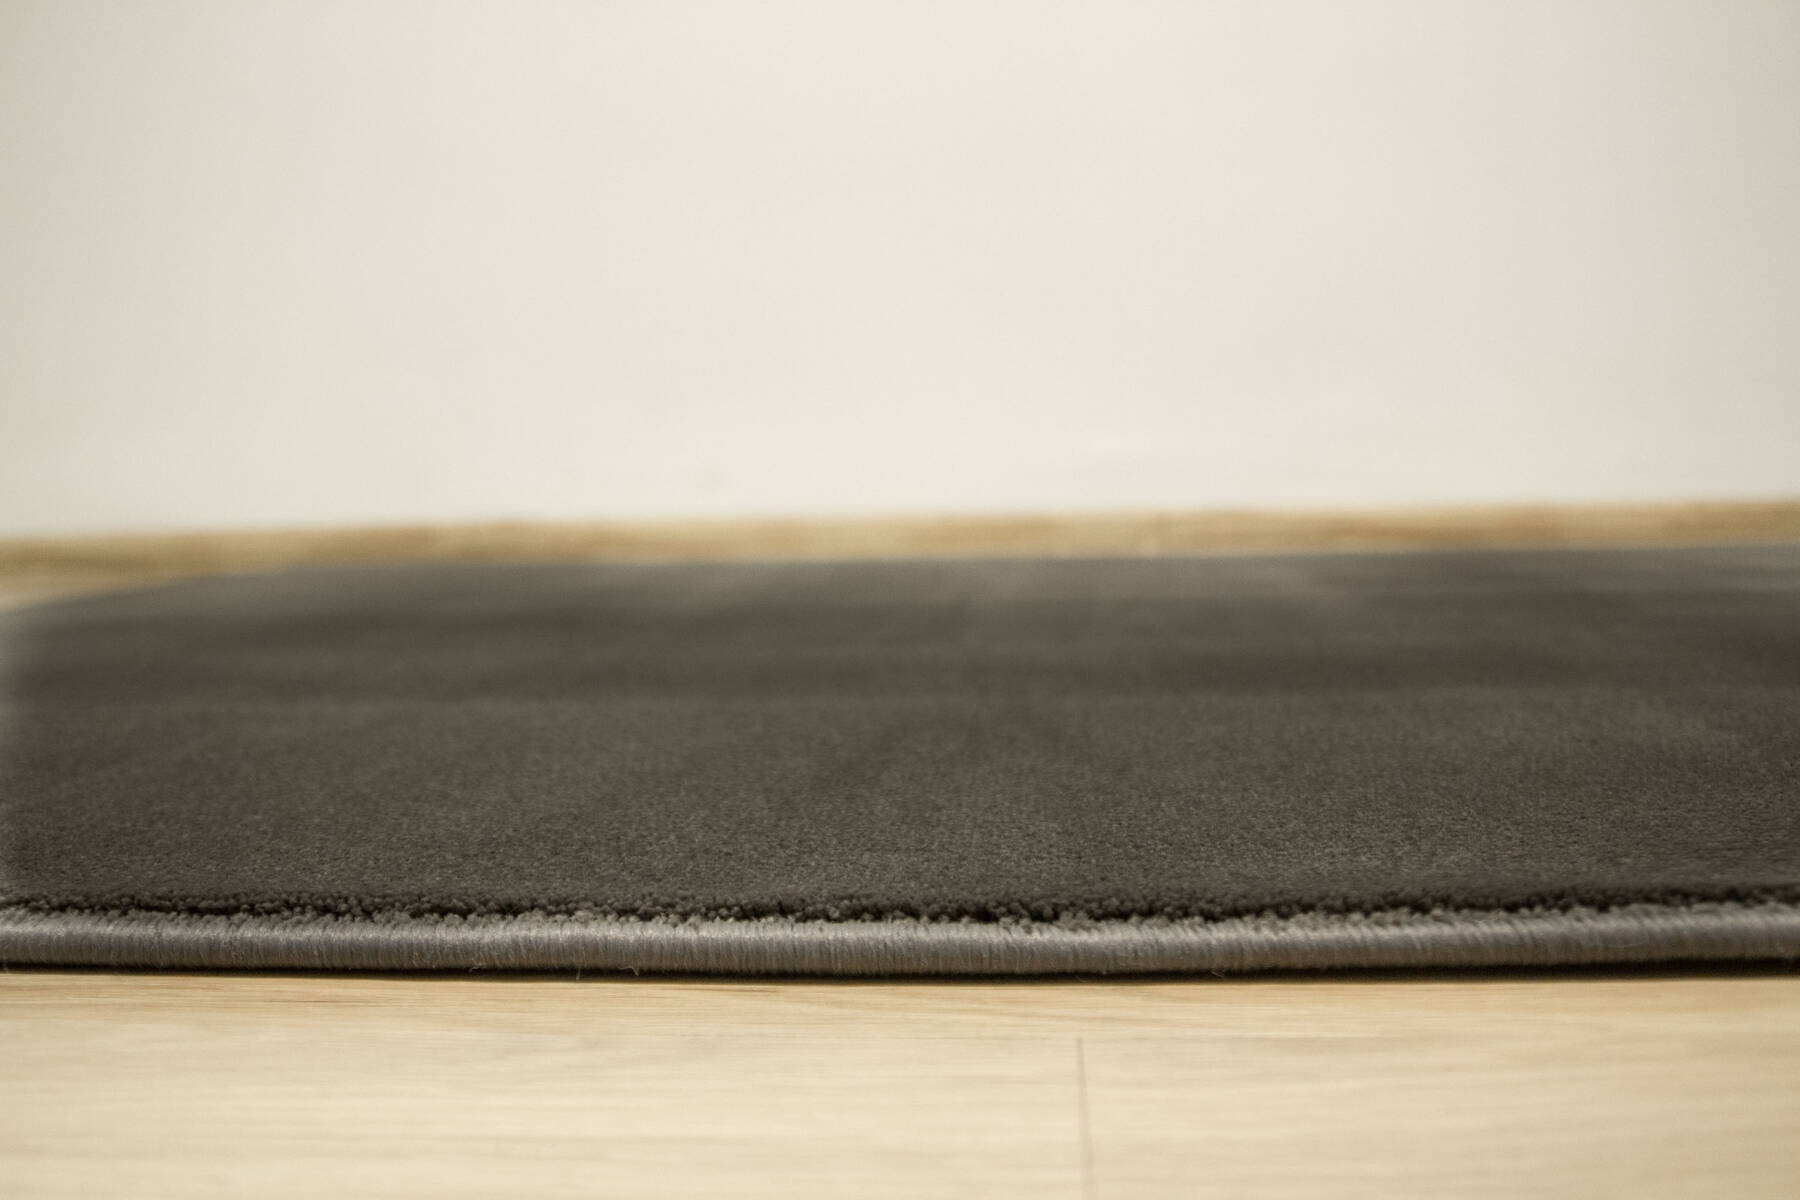 Metrážový koberec Kempinski 93 tmavě šedý